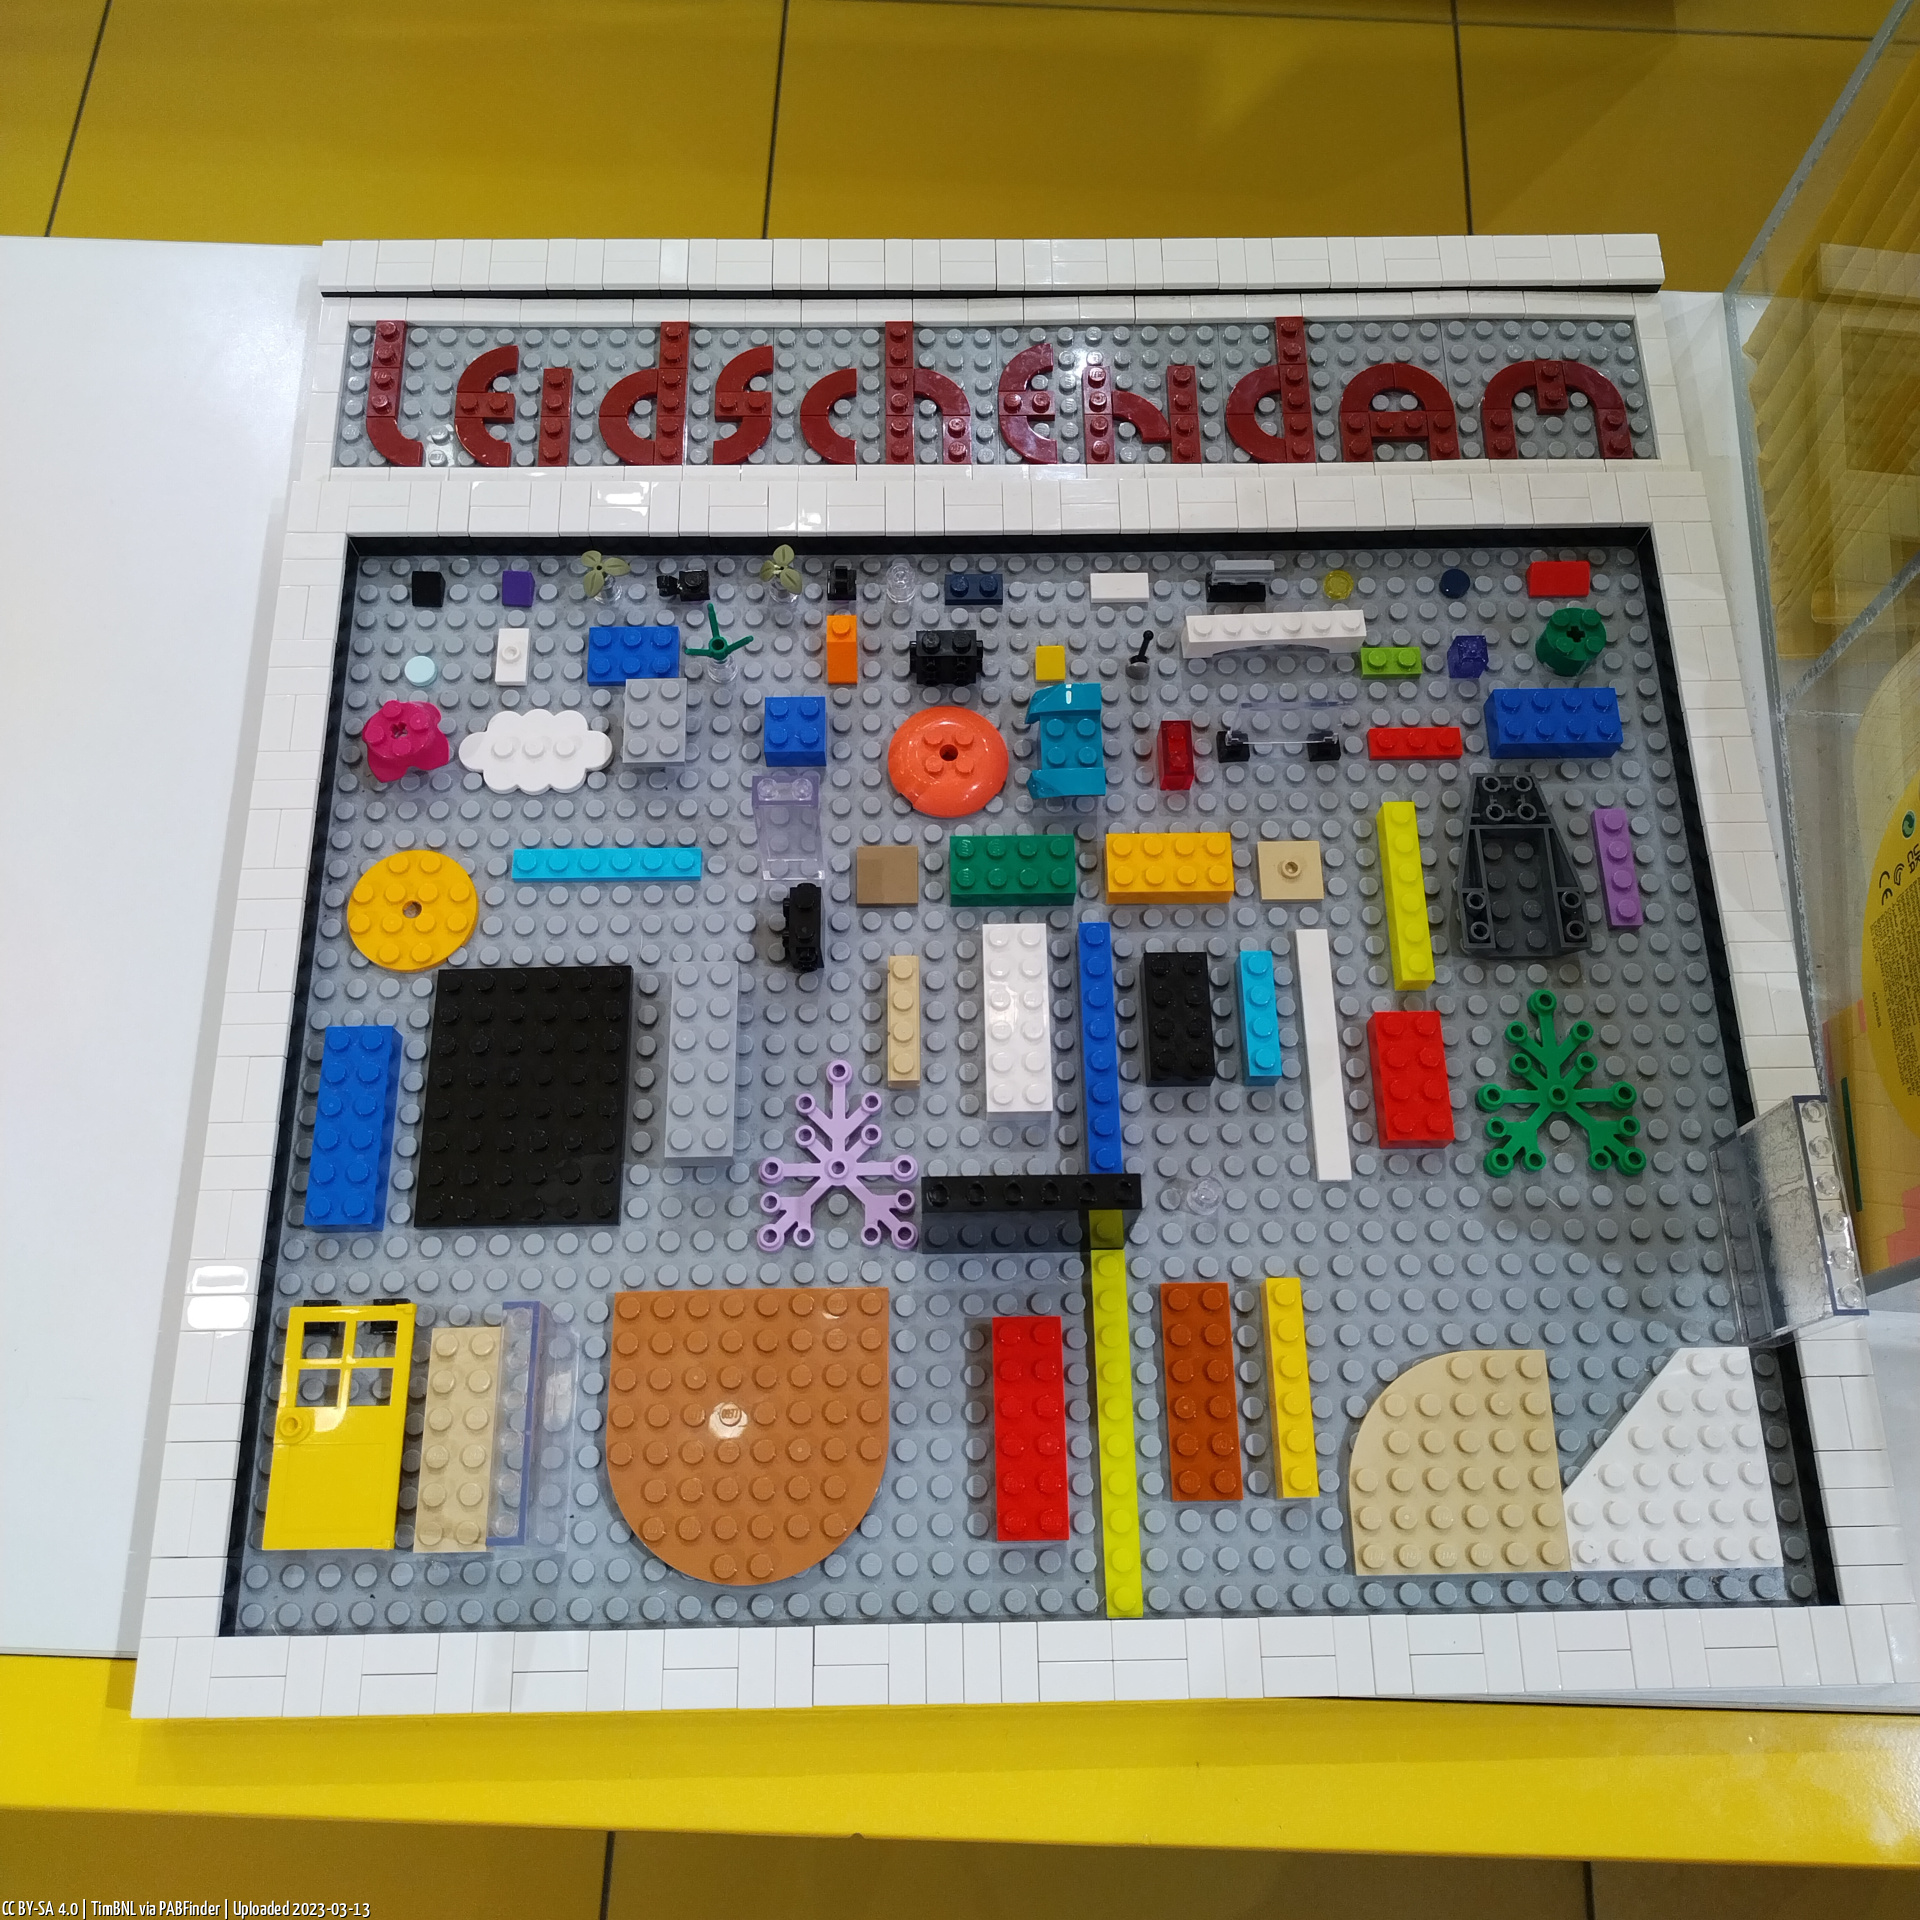 Pick a Brick Mall of the Netherlands (TimBNL, 3/13/23, 11:39:29 PM)